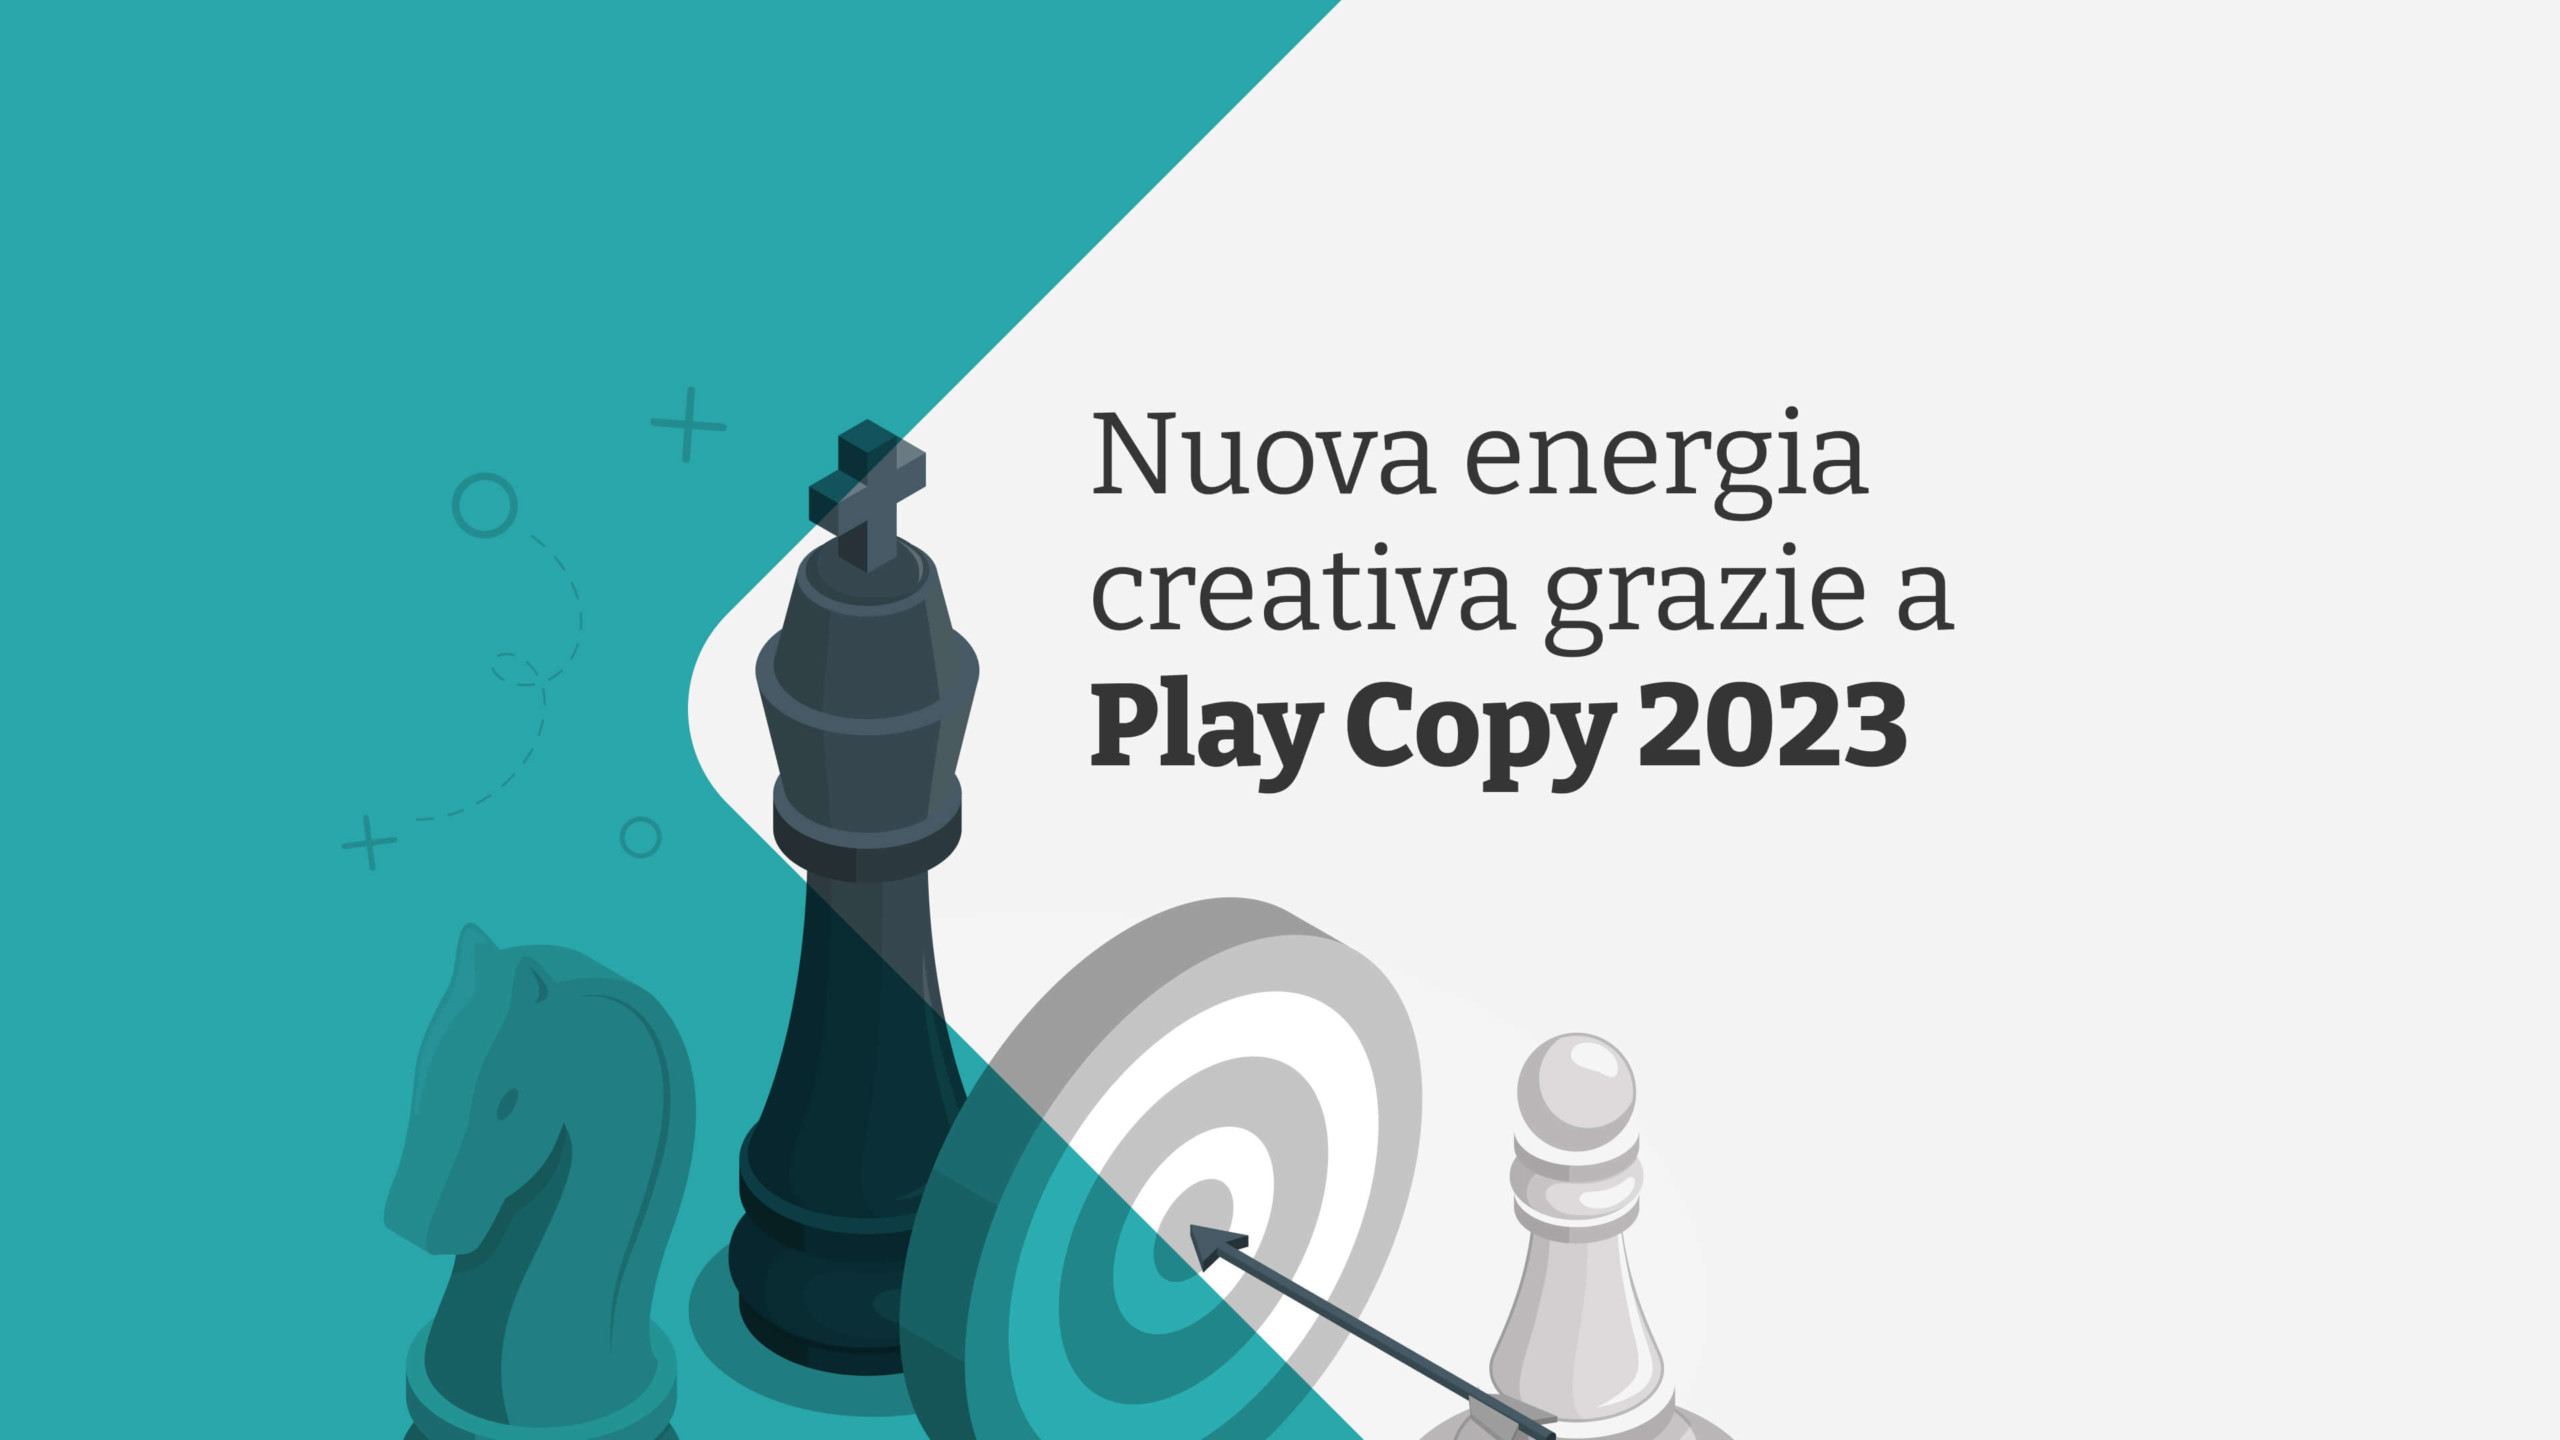 Immagine dell'articolo Nuova energia creativa grazie a Play Copy 2023